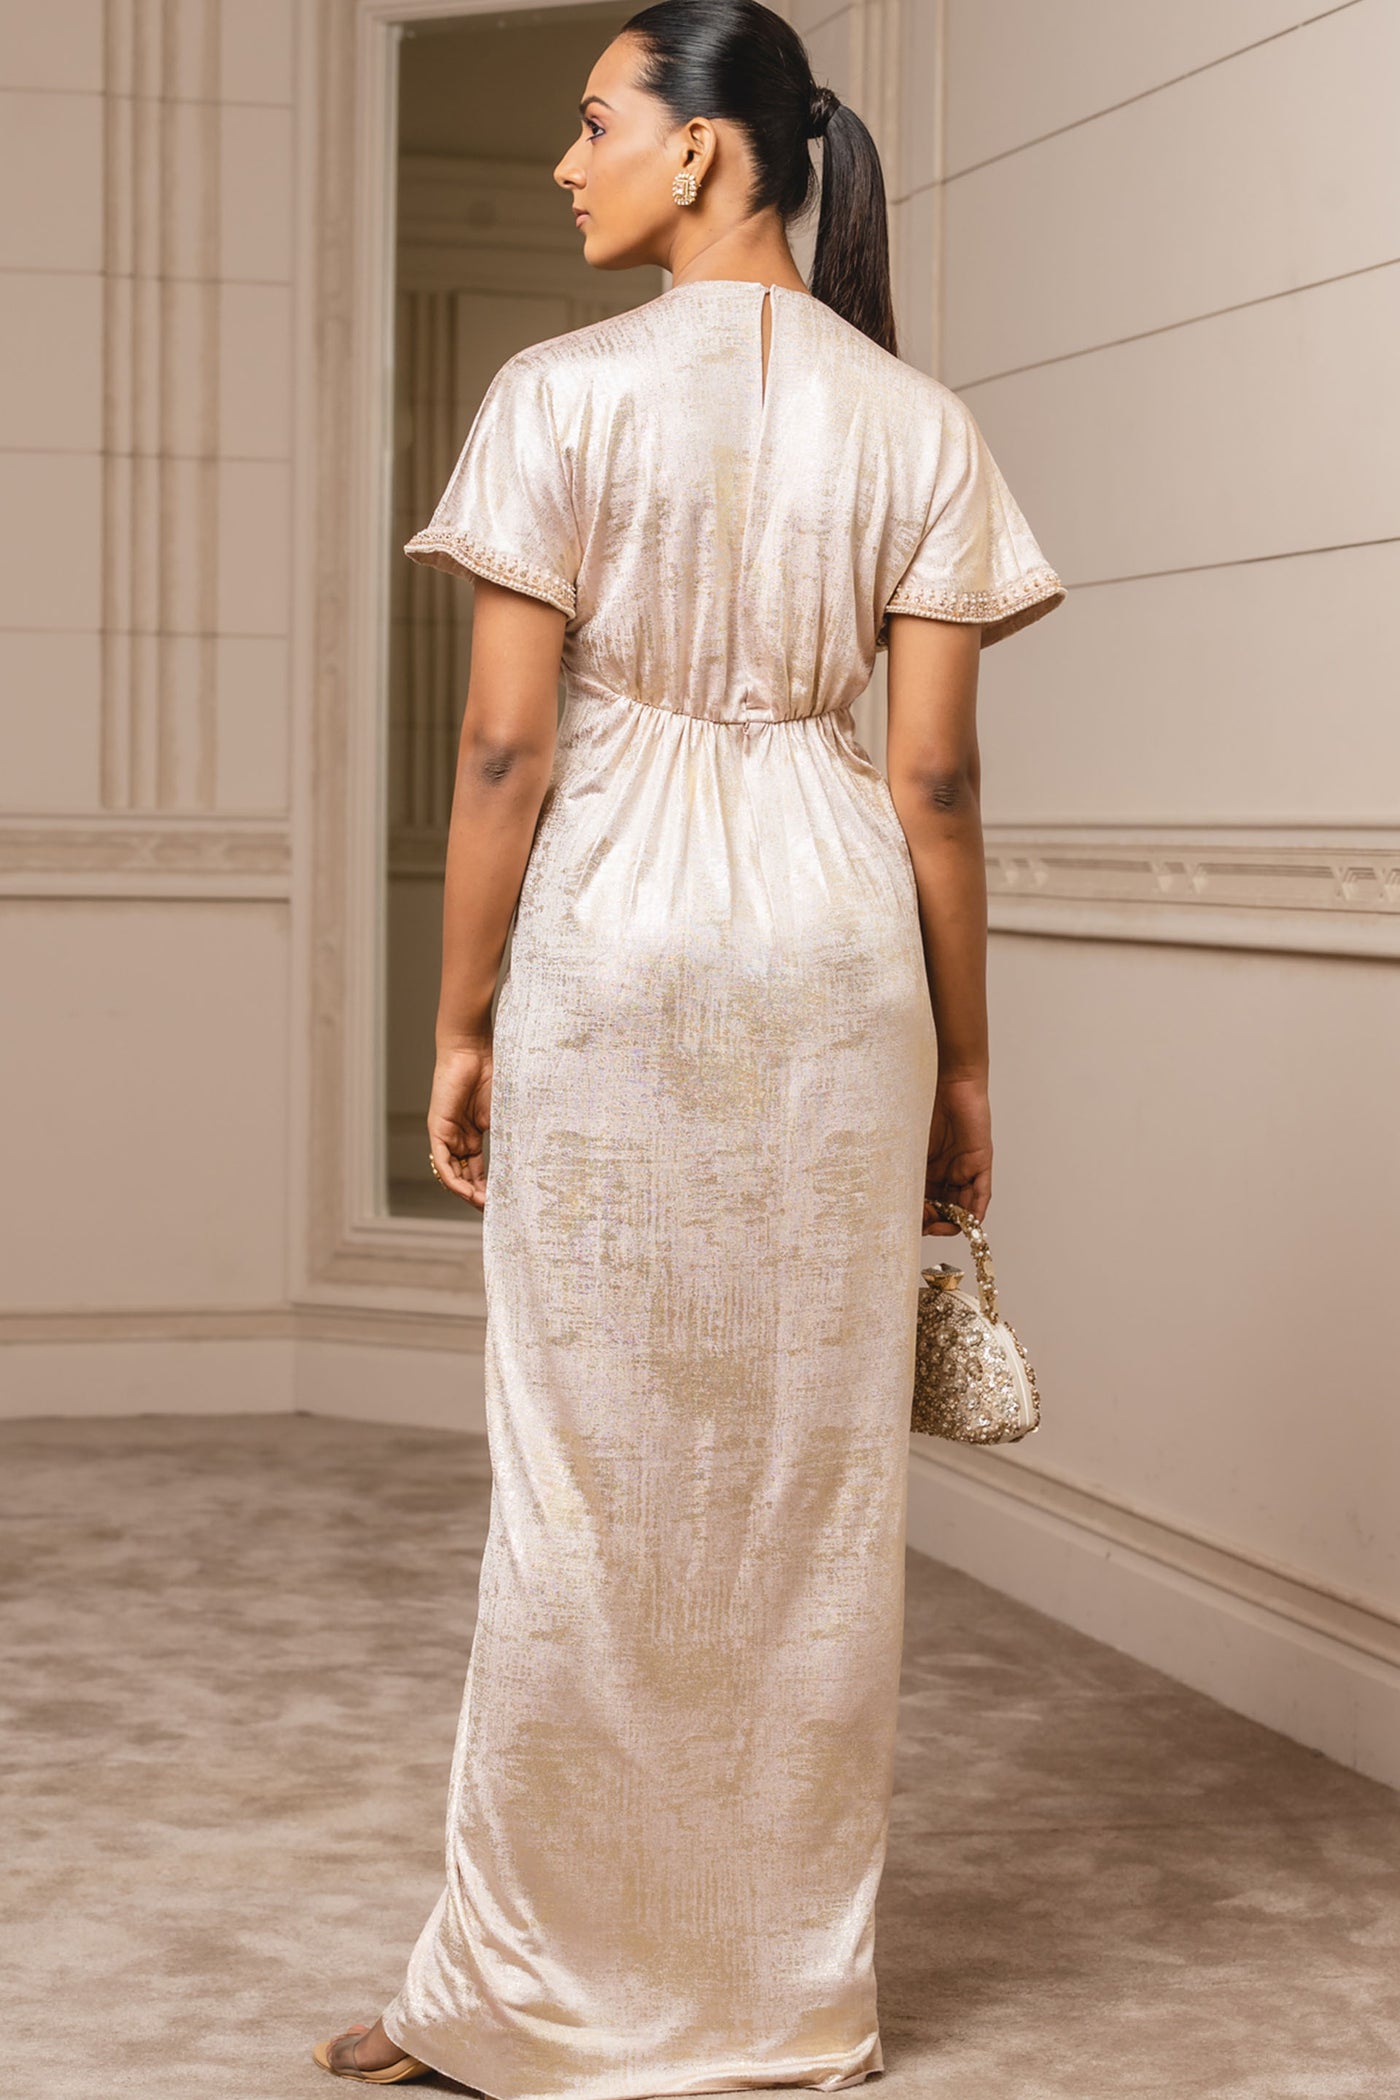 Tarun tahiliani Draped Foil Jersey Dress blush indian designer wear bridal wedding online shopping melange singapore